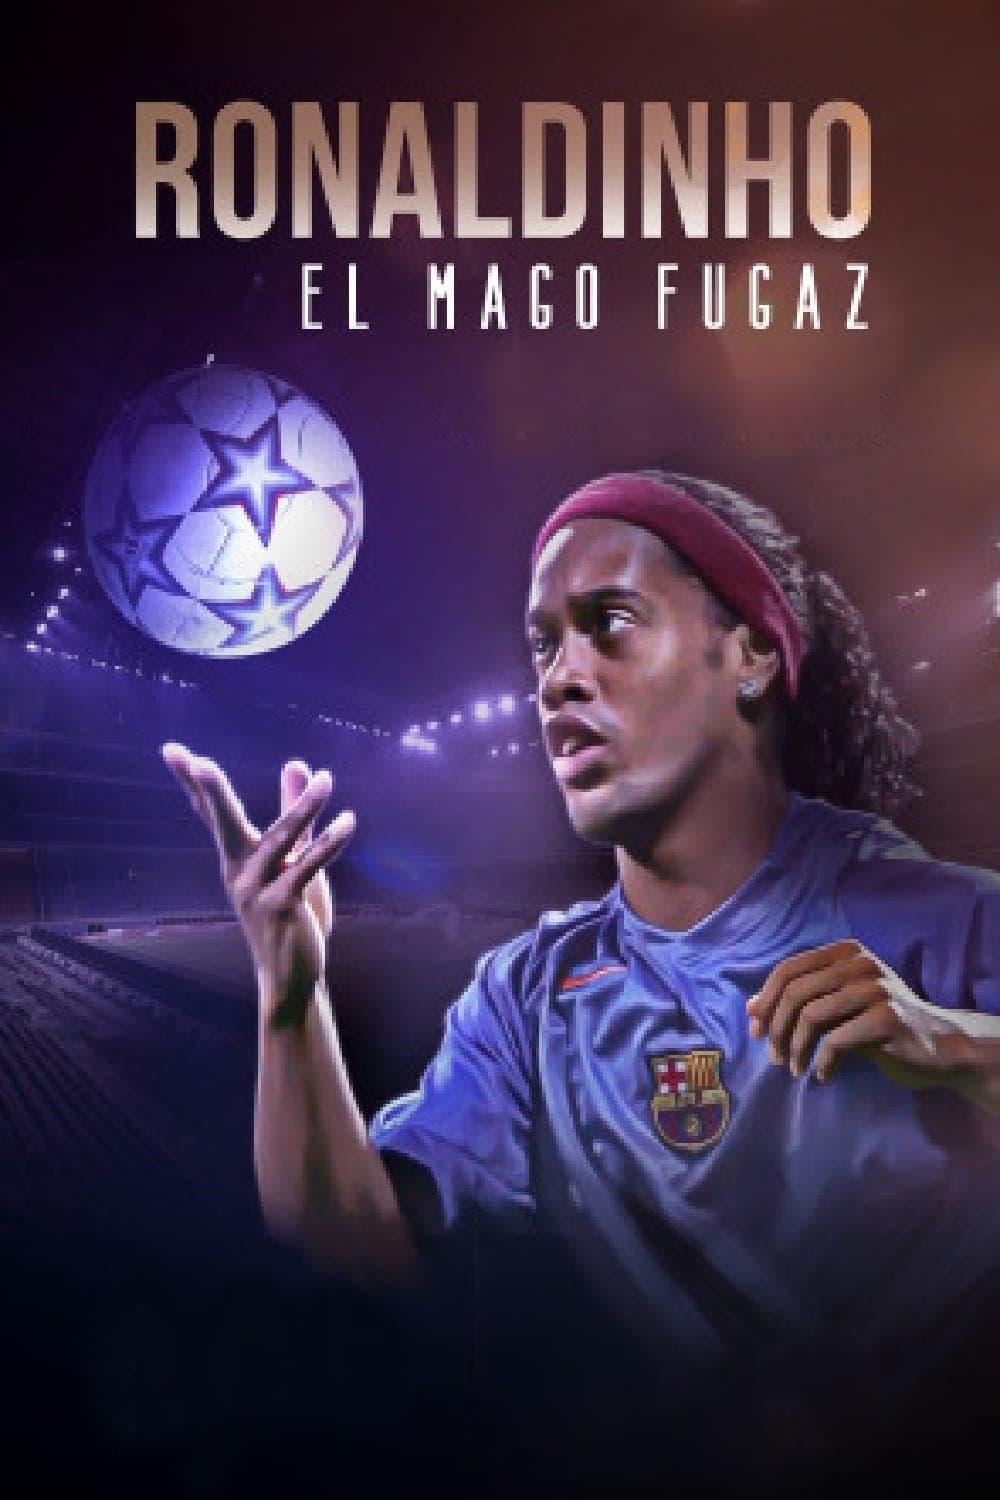 Ronaldinho, el mago fugaz